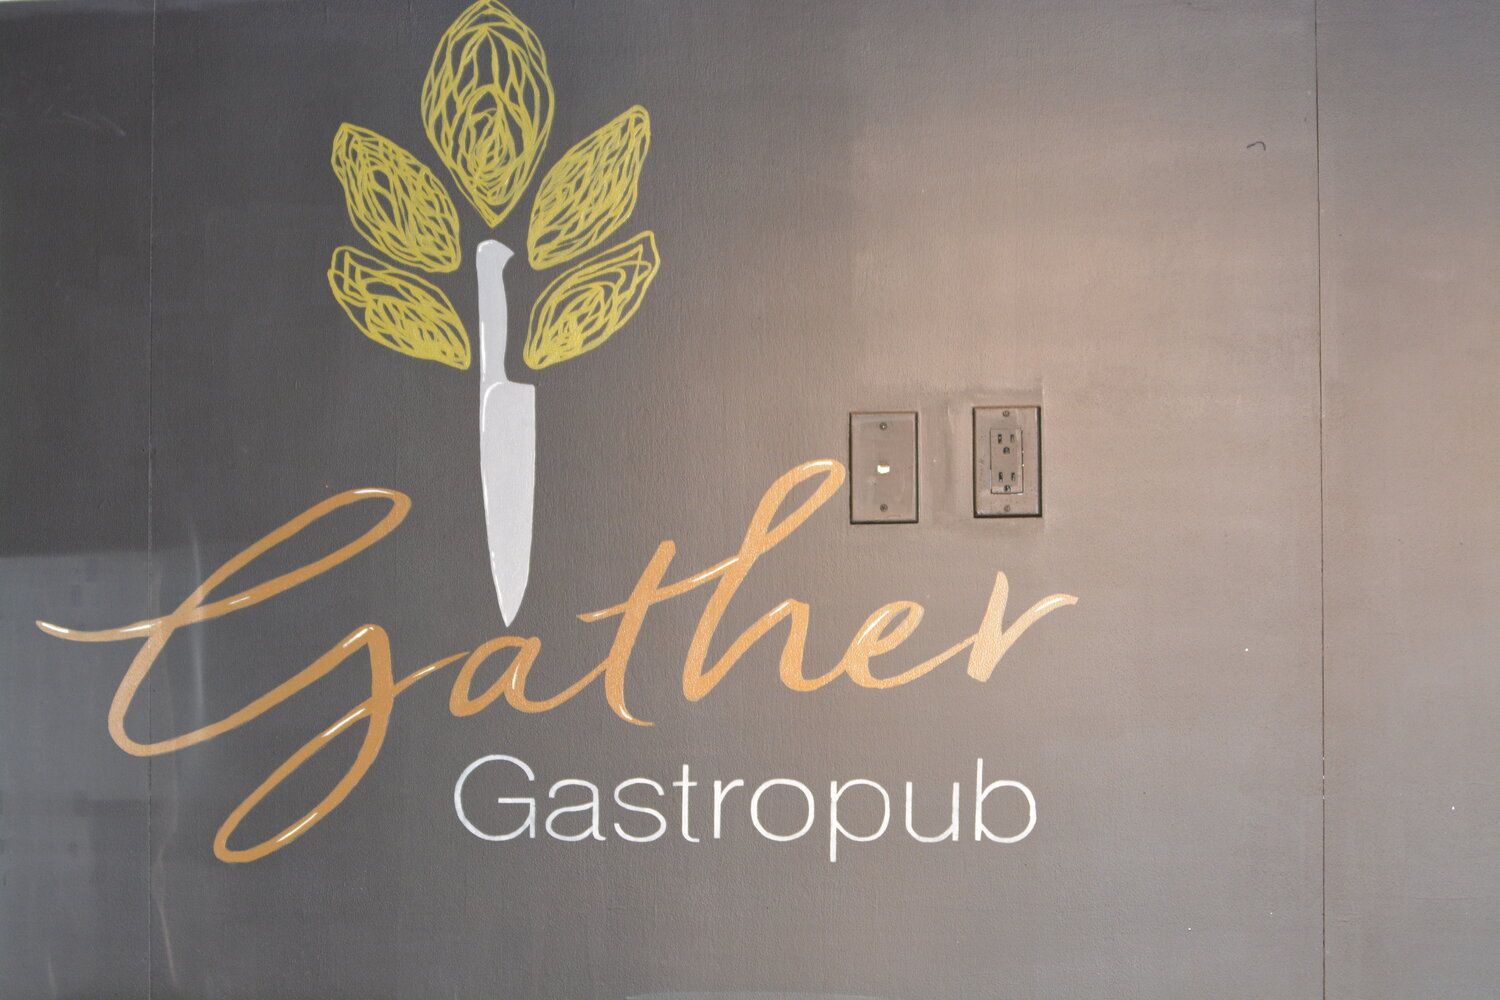 Gather Gastropub is located at 9144 Burnett Road, near Northwest Grind Coffee.